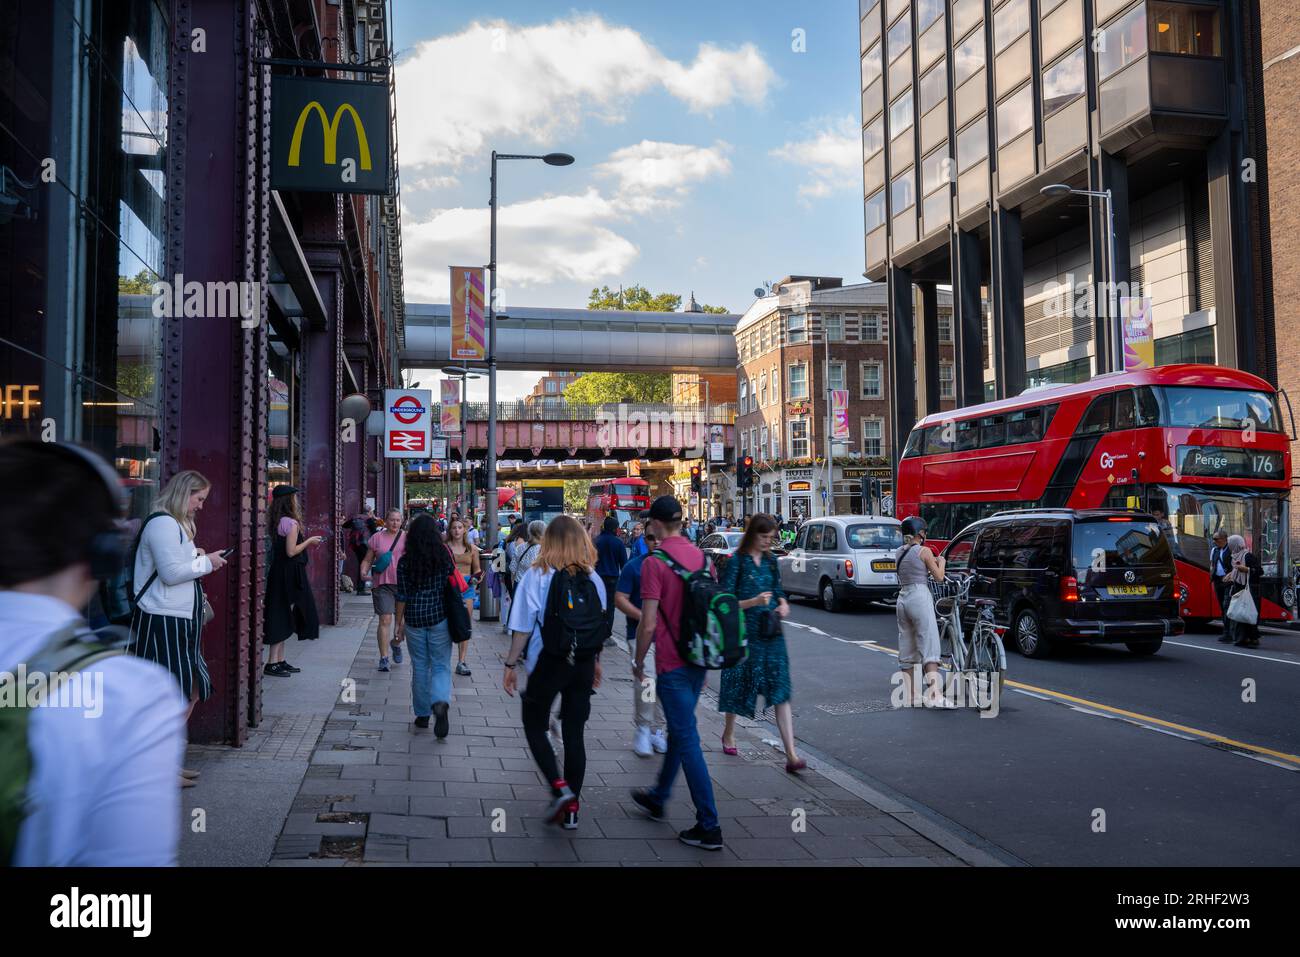 Londra, Regno Unito: Scena stradale su Waterloo Road, di fronte alla stazione di Waterloo a Londra. Foto Stock